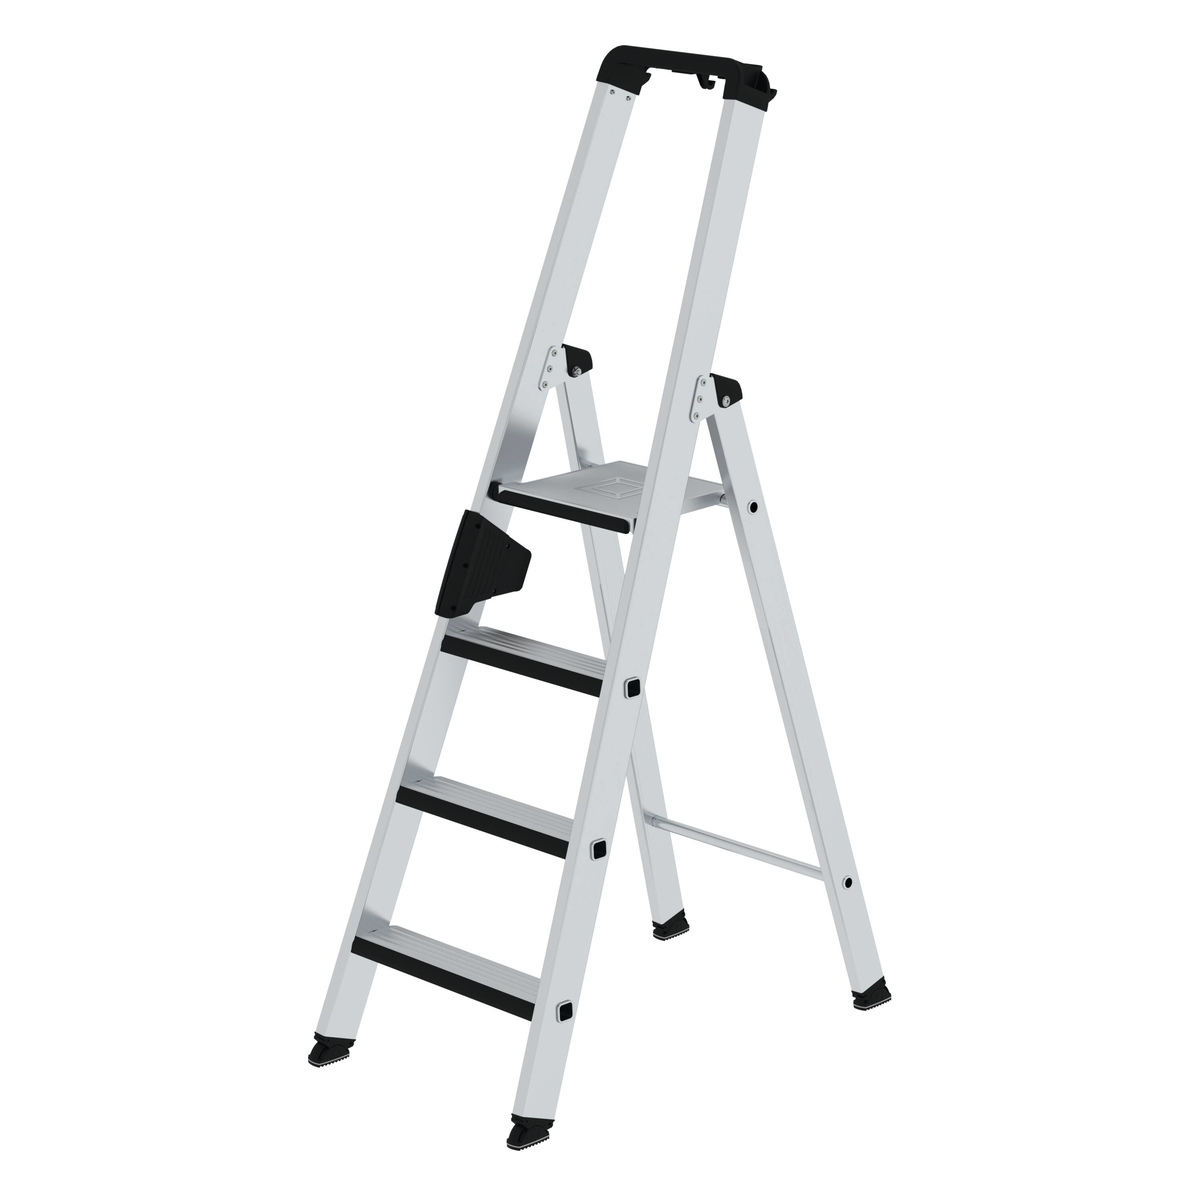 Stufen-Stehleiter einseitig begehbar mit relax step®, 9 Stufen